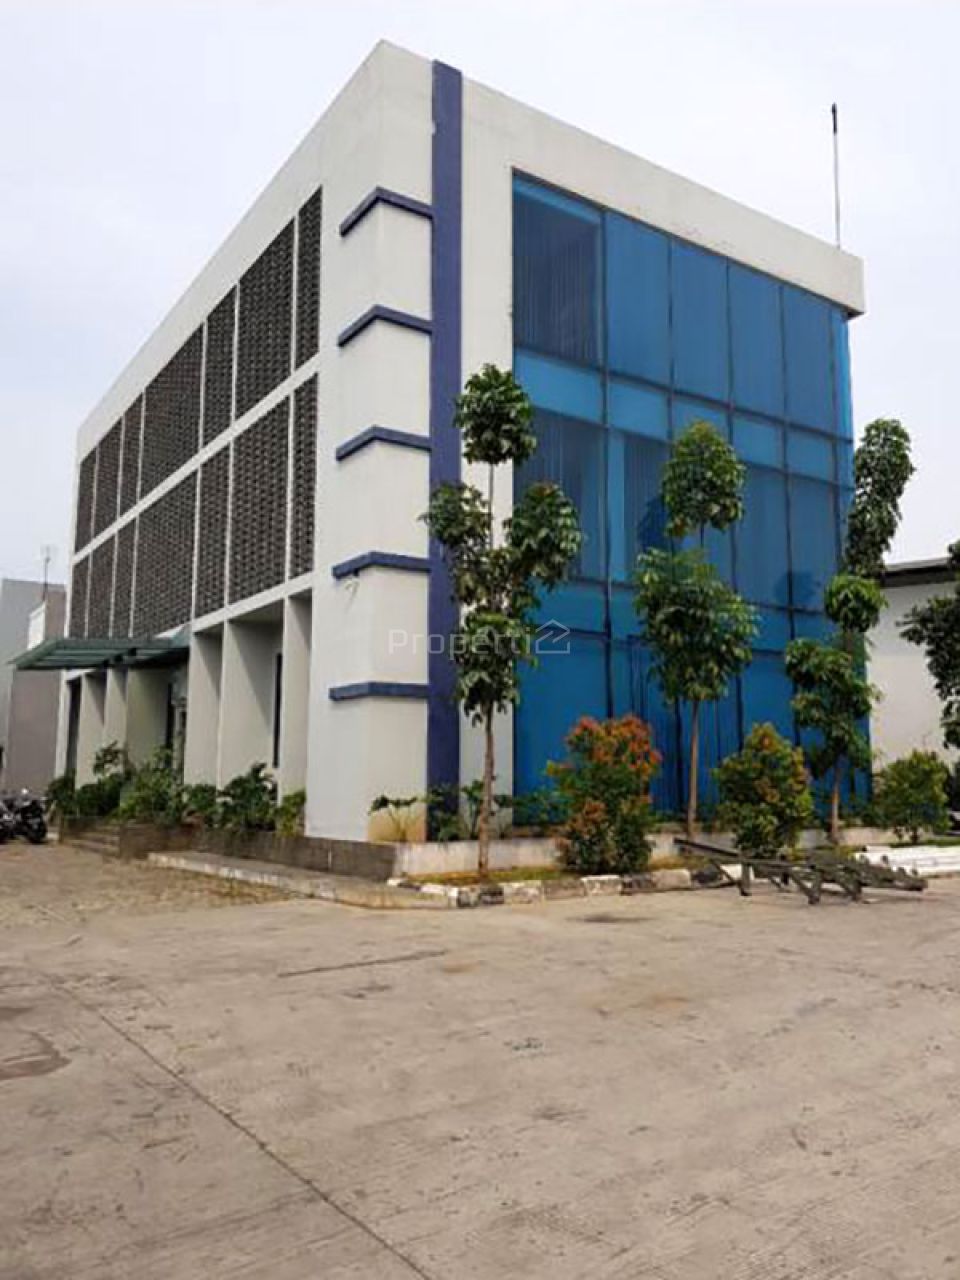 Office and Warehouse Building in Jababeka 3 Cikarang, Jawa Barat